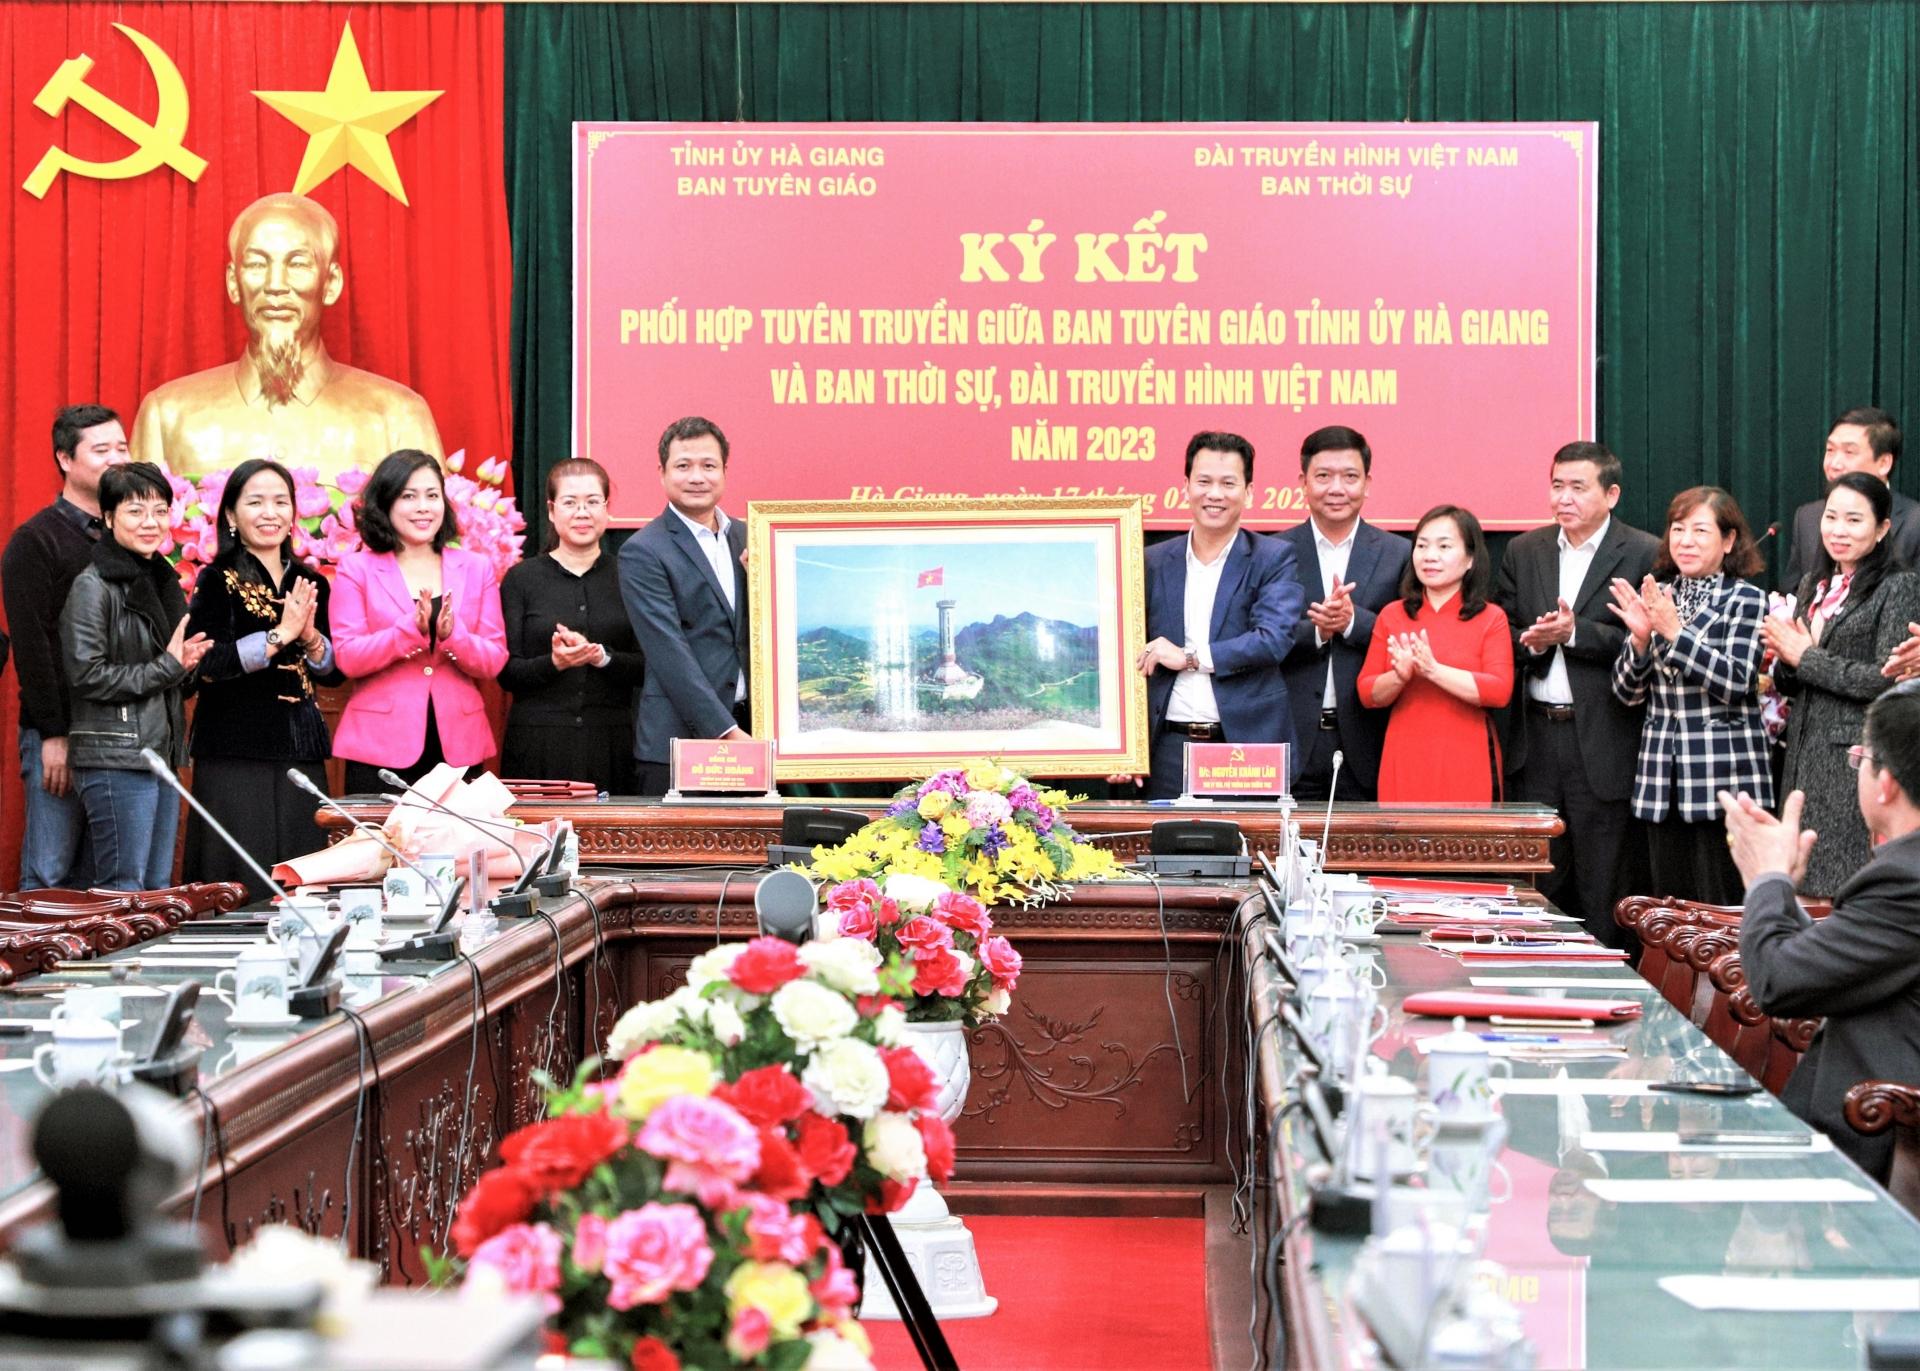 Bí thư Tỉnh ủy Đặng Quốc Khánh tặng bức ảnh Cột cờ Quốc gia Lũng Cú cho Ban Thời sự VTV1, Đài Truyền hình Việt Nam.